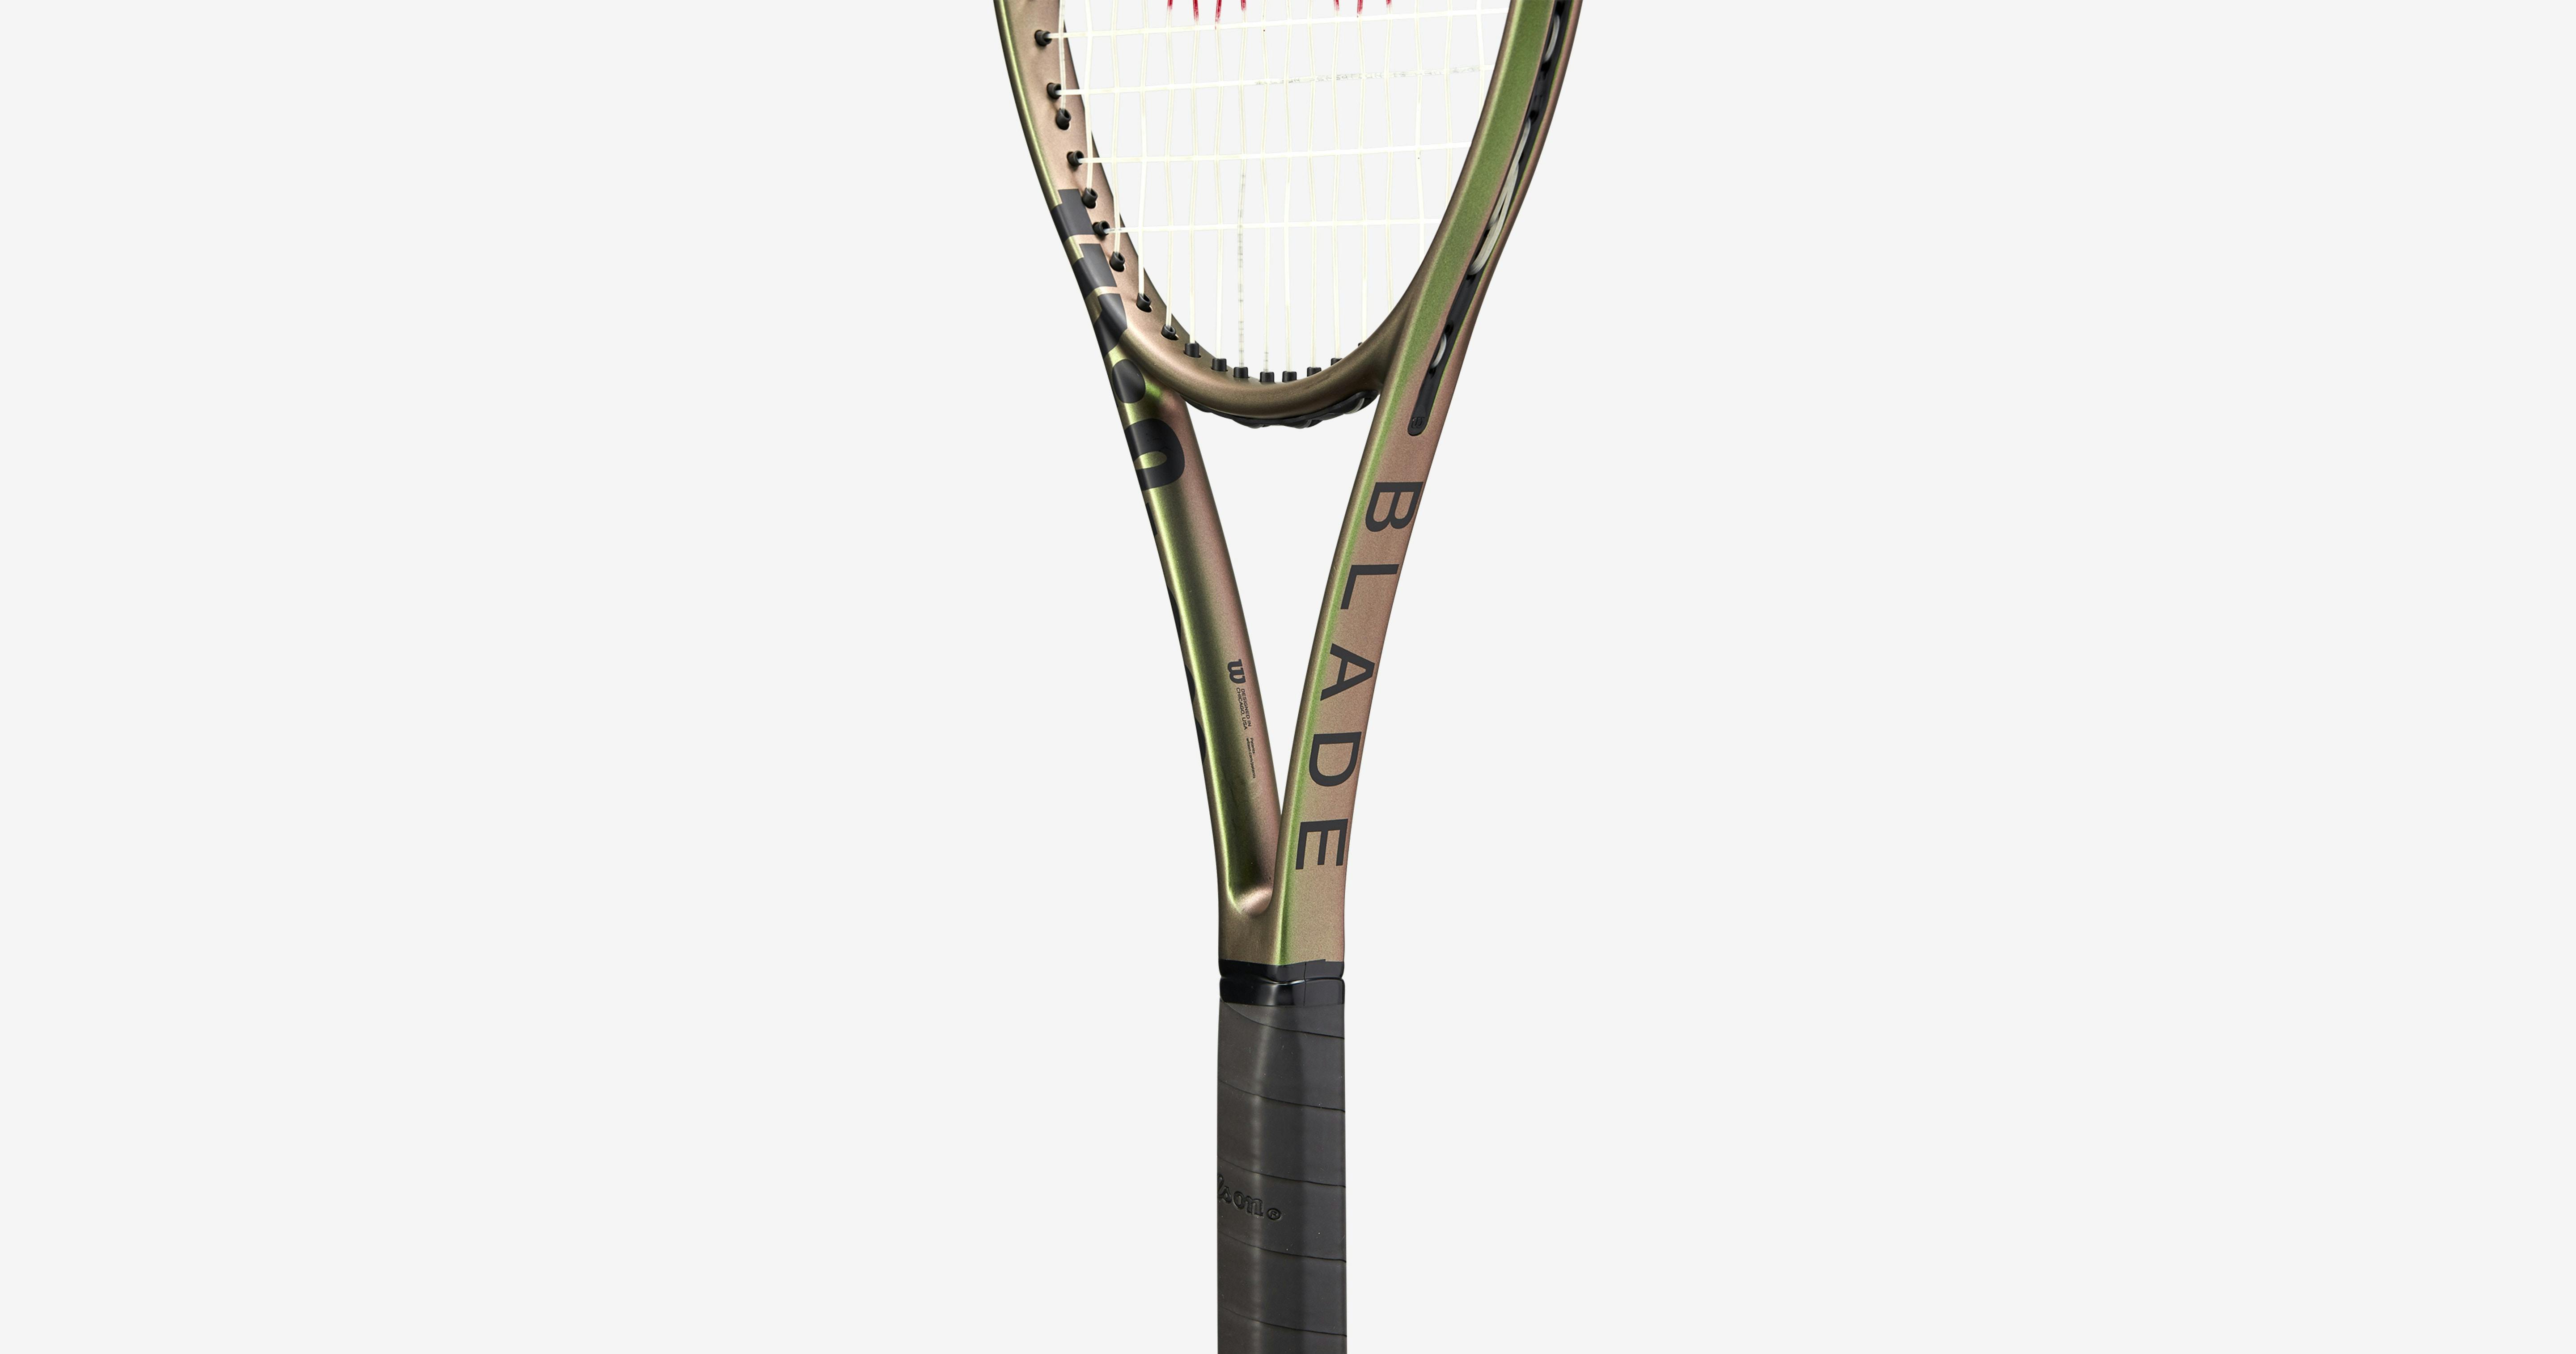 Wilson Blade 98 V8 (18x20) Racquet · Unstrung